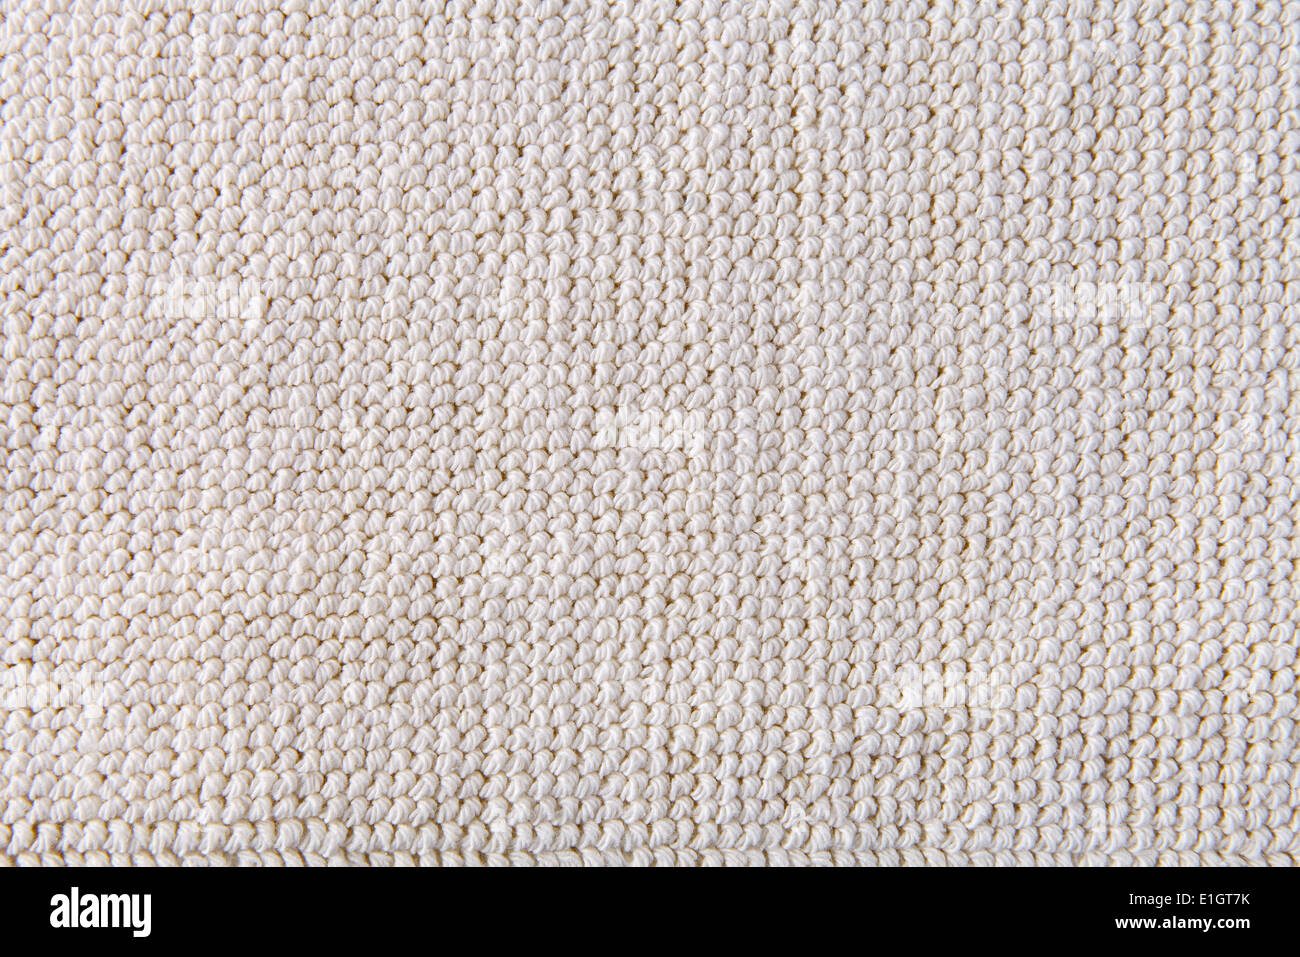 Closeup detalle de alfombra beige textura del fondo Foto de stock